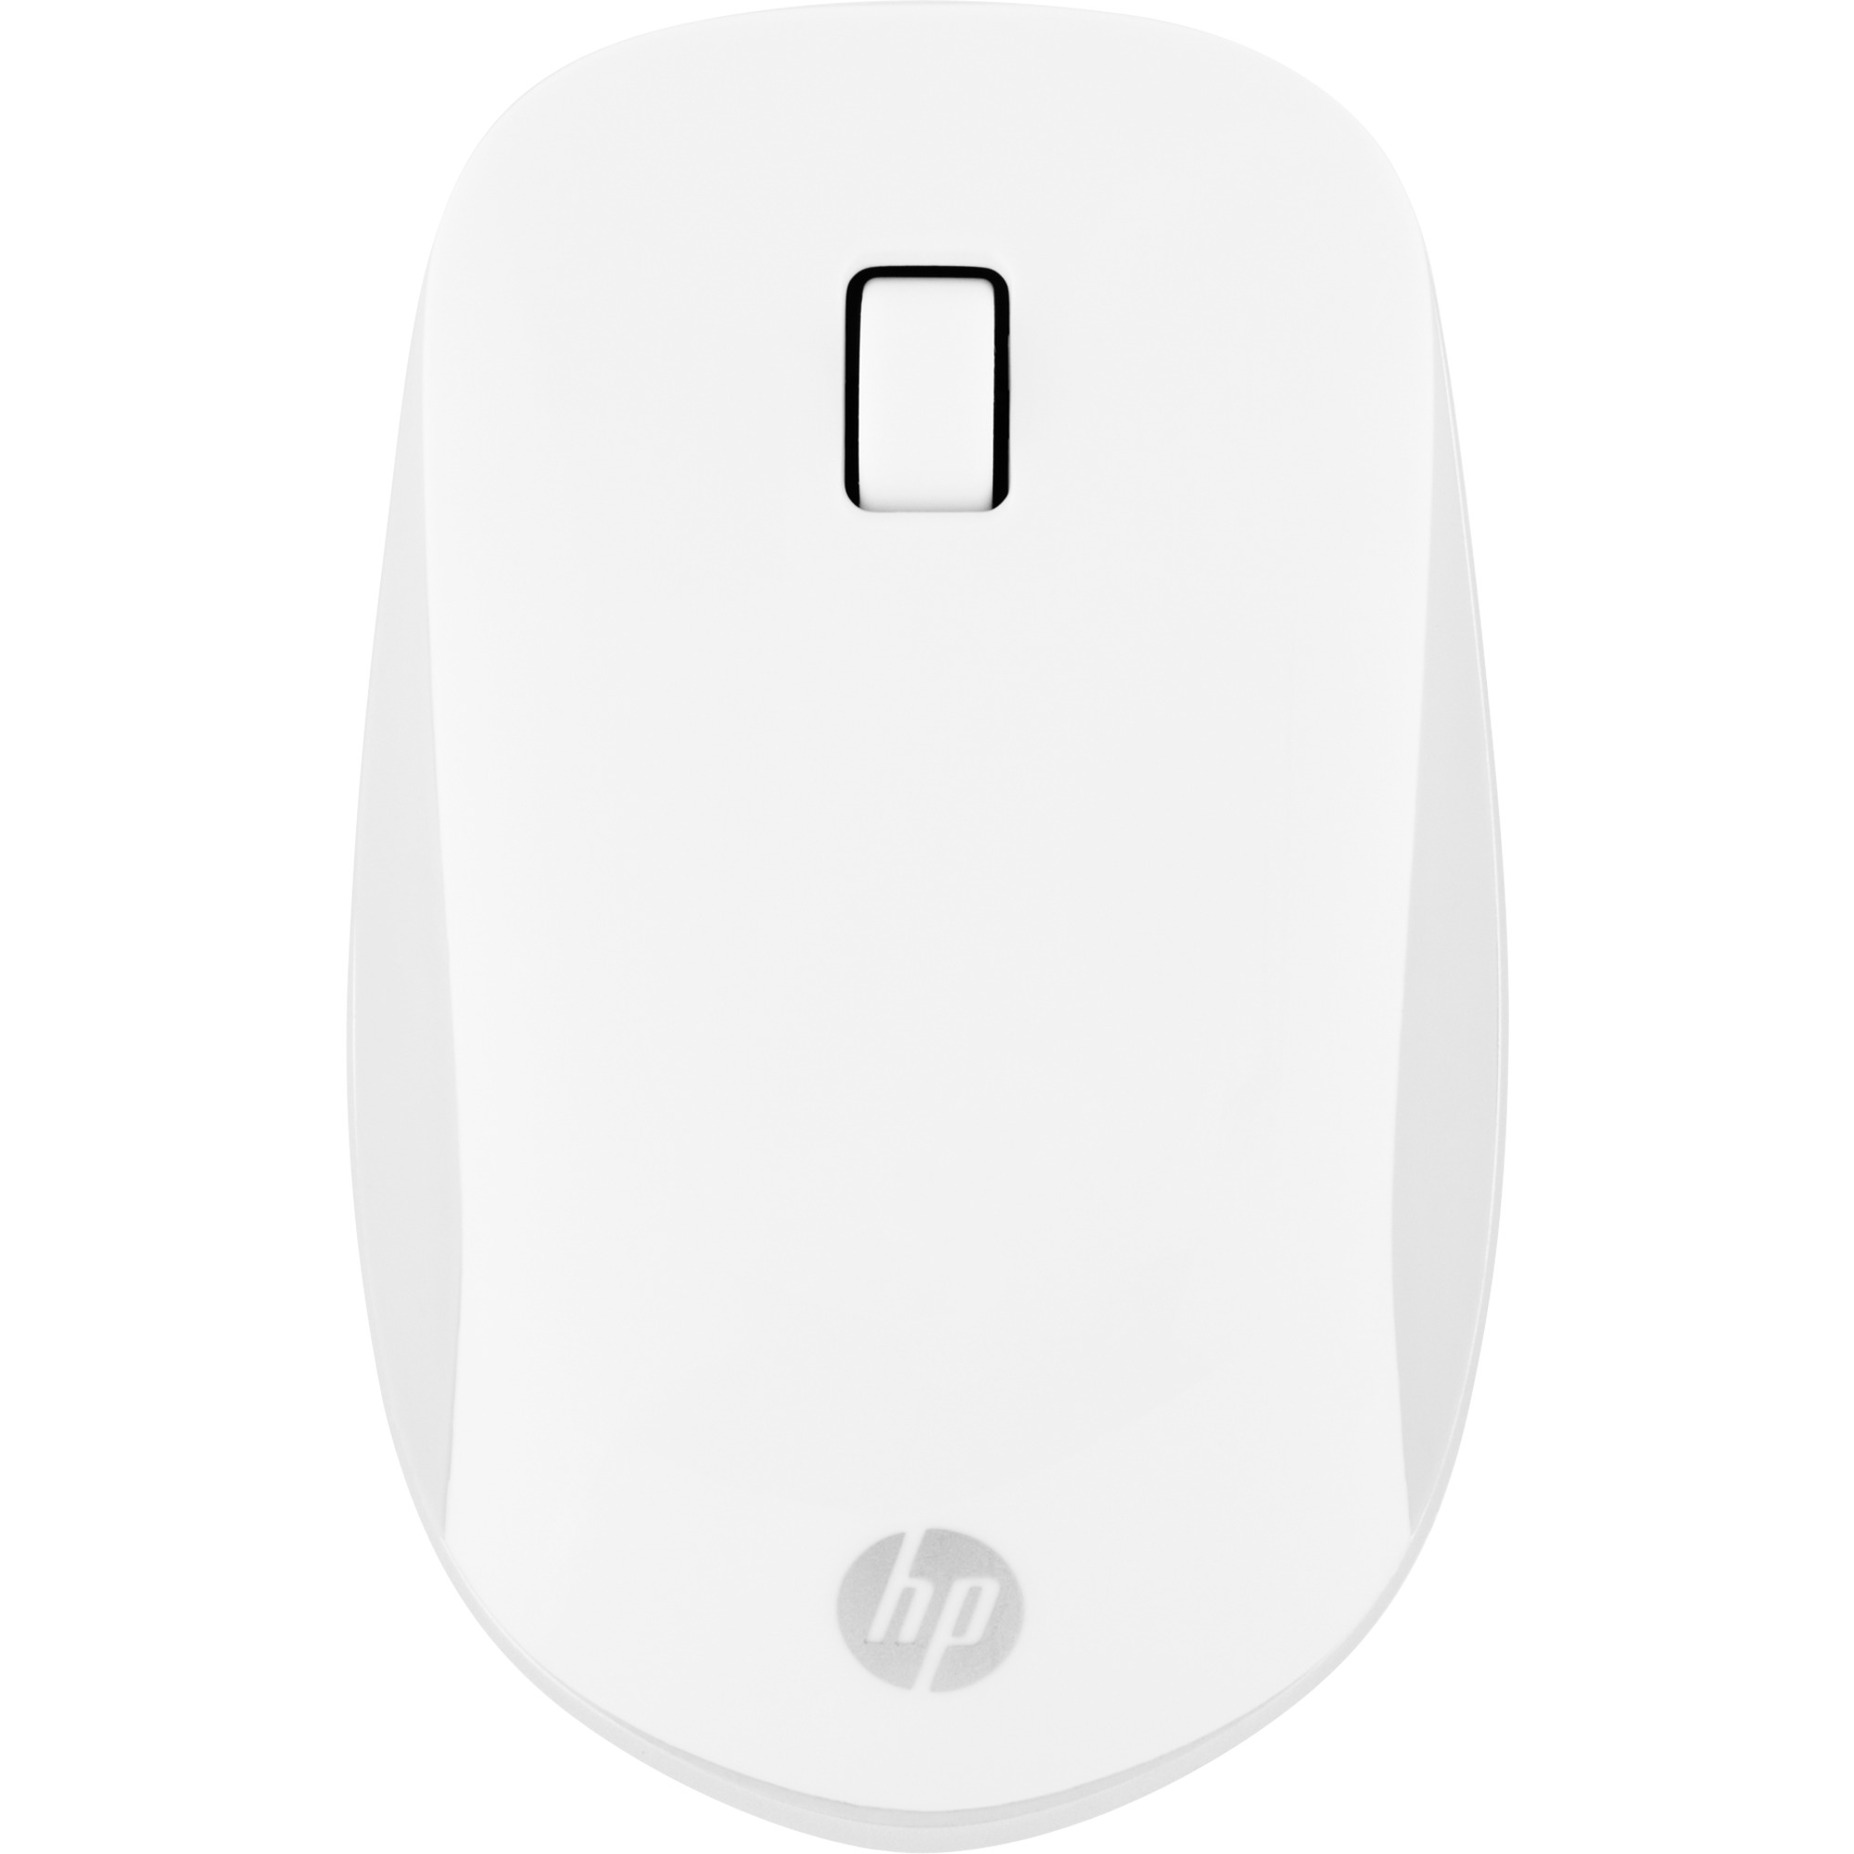 410 Flache Bluetooth Maus von HP